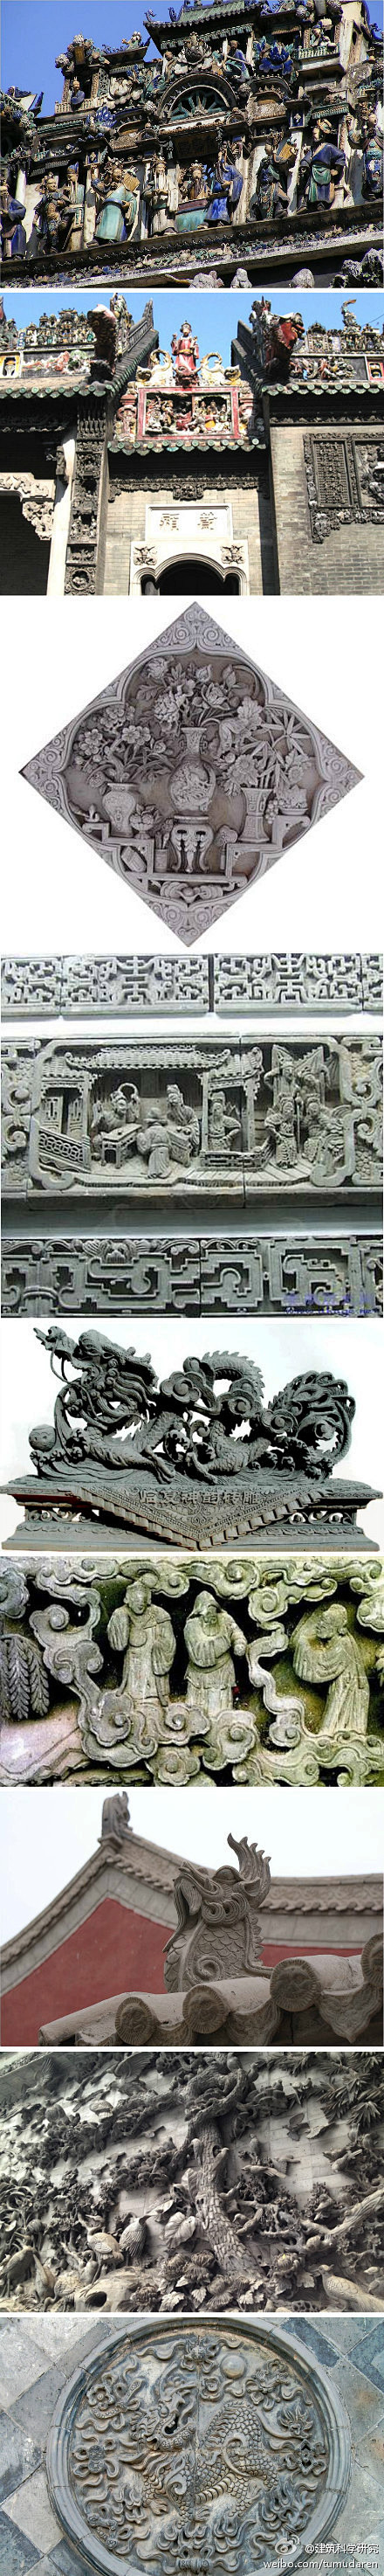 【中国砖雕】中国砖雕由东周瓦当、汉代画像...